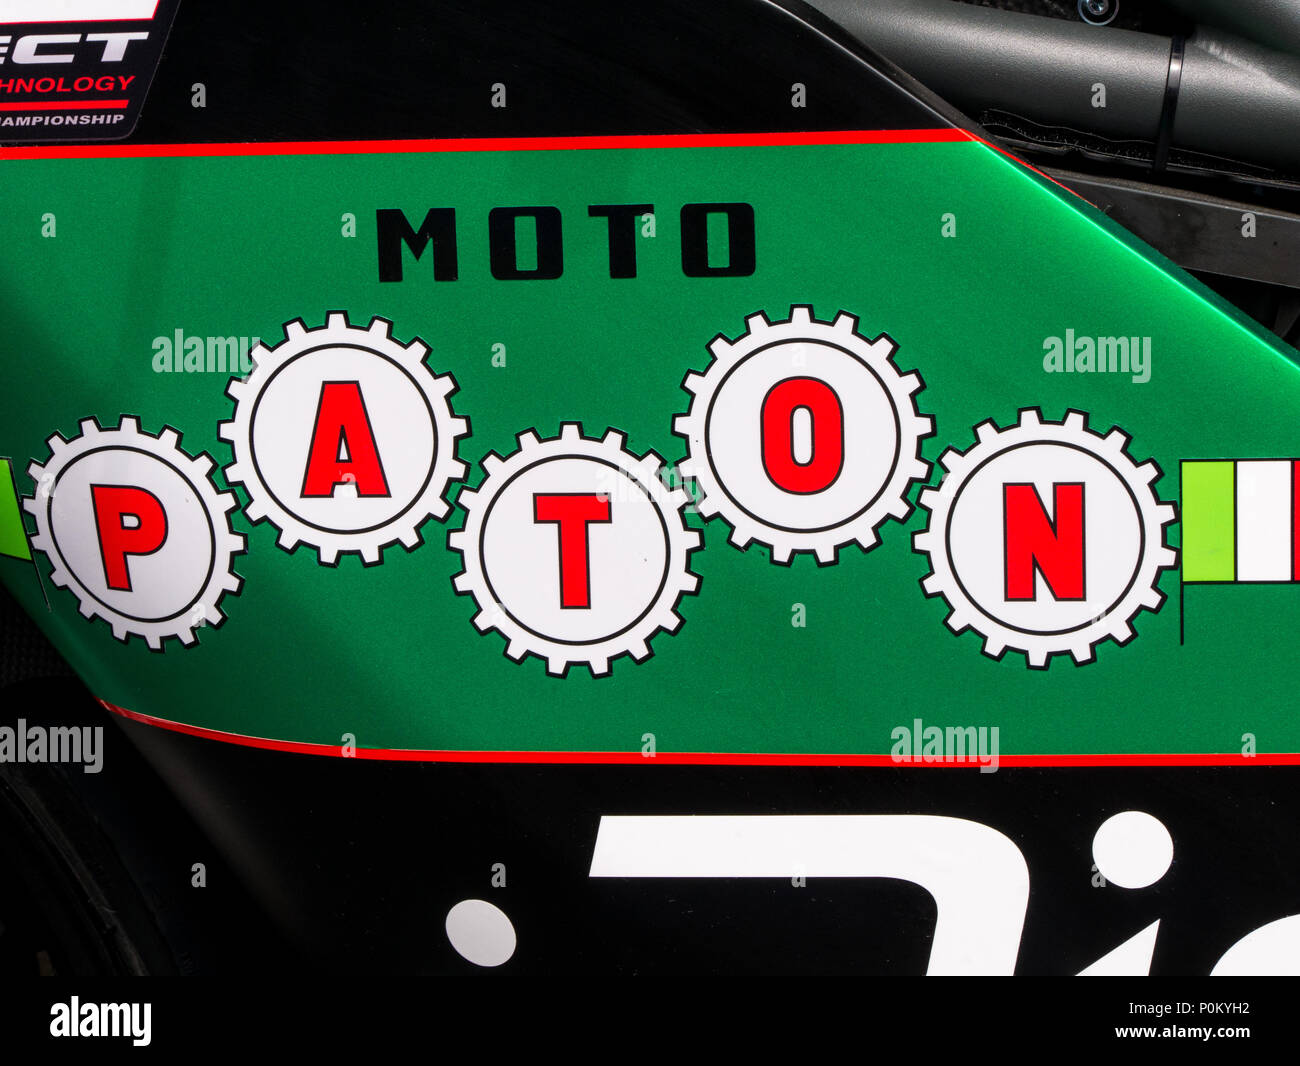 Moto Moto légère Paton, de l'Italie, Île de Man TT course sur route, bien sûr la montagne, 2018 Banque D'Images